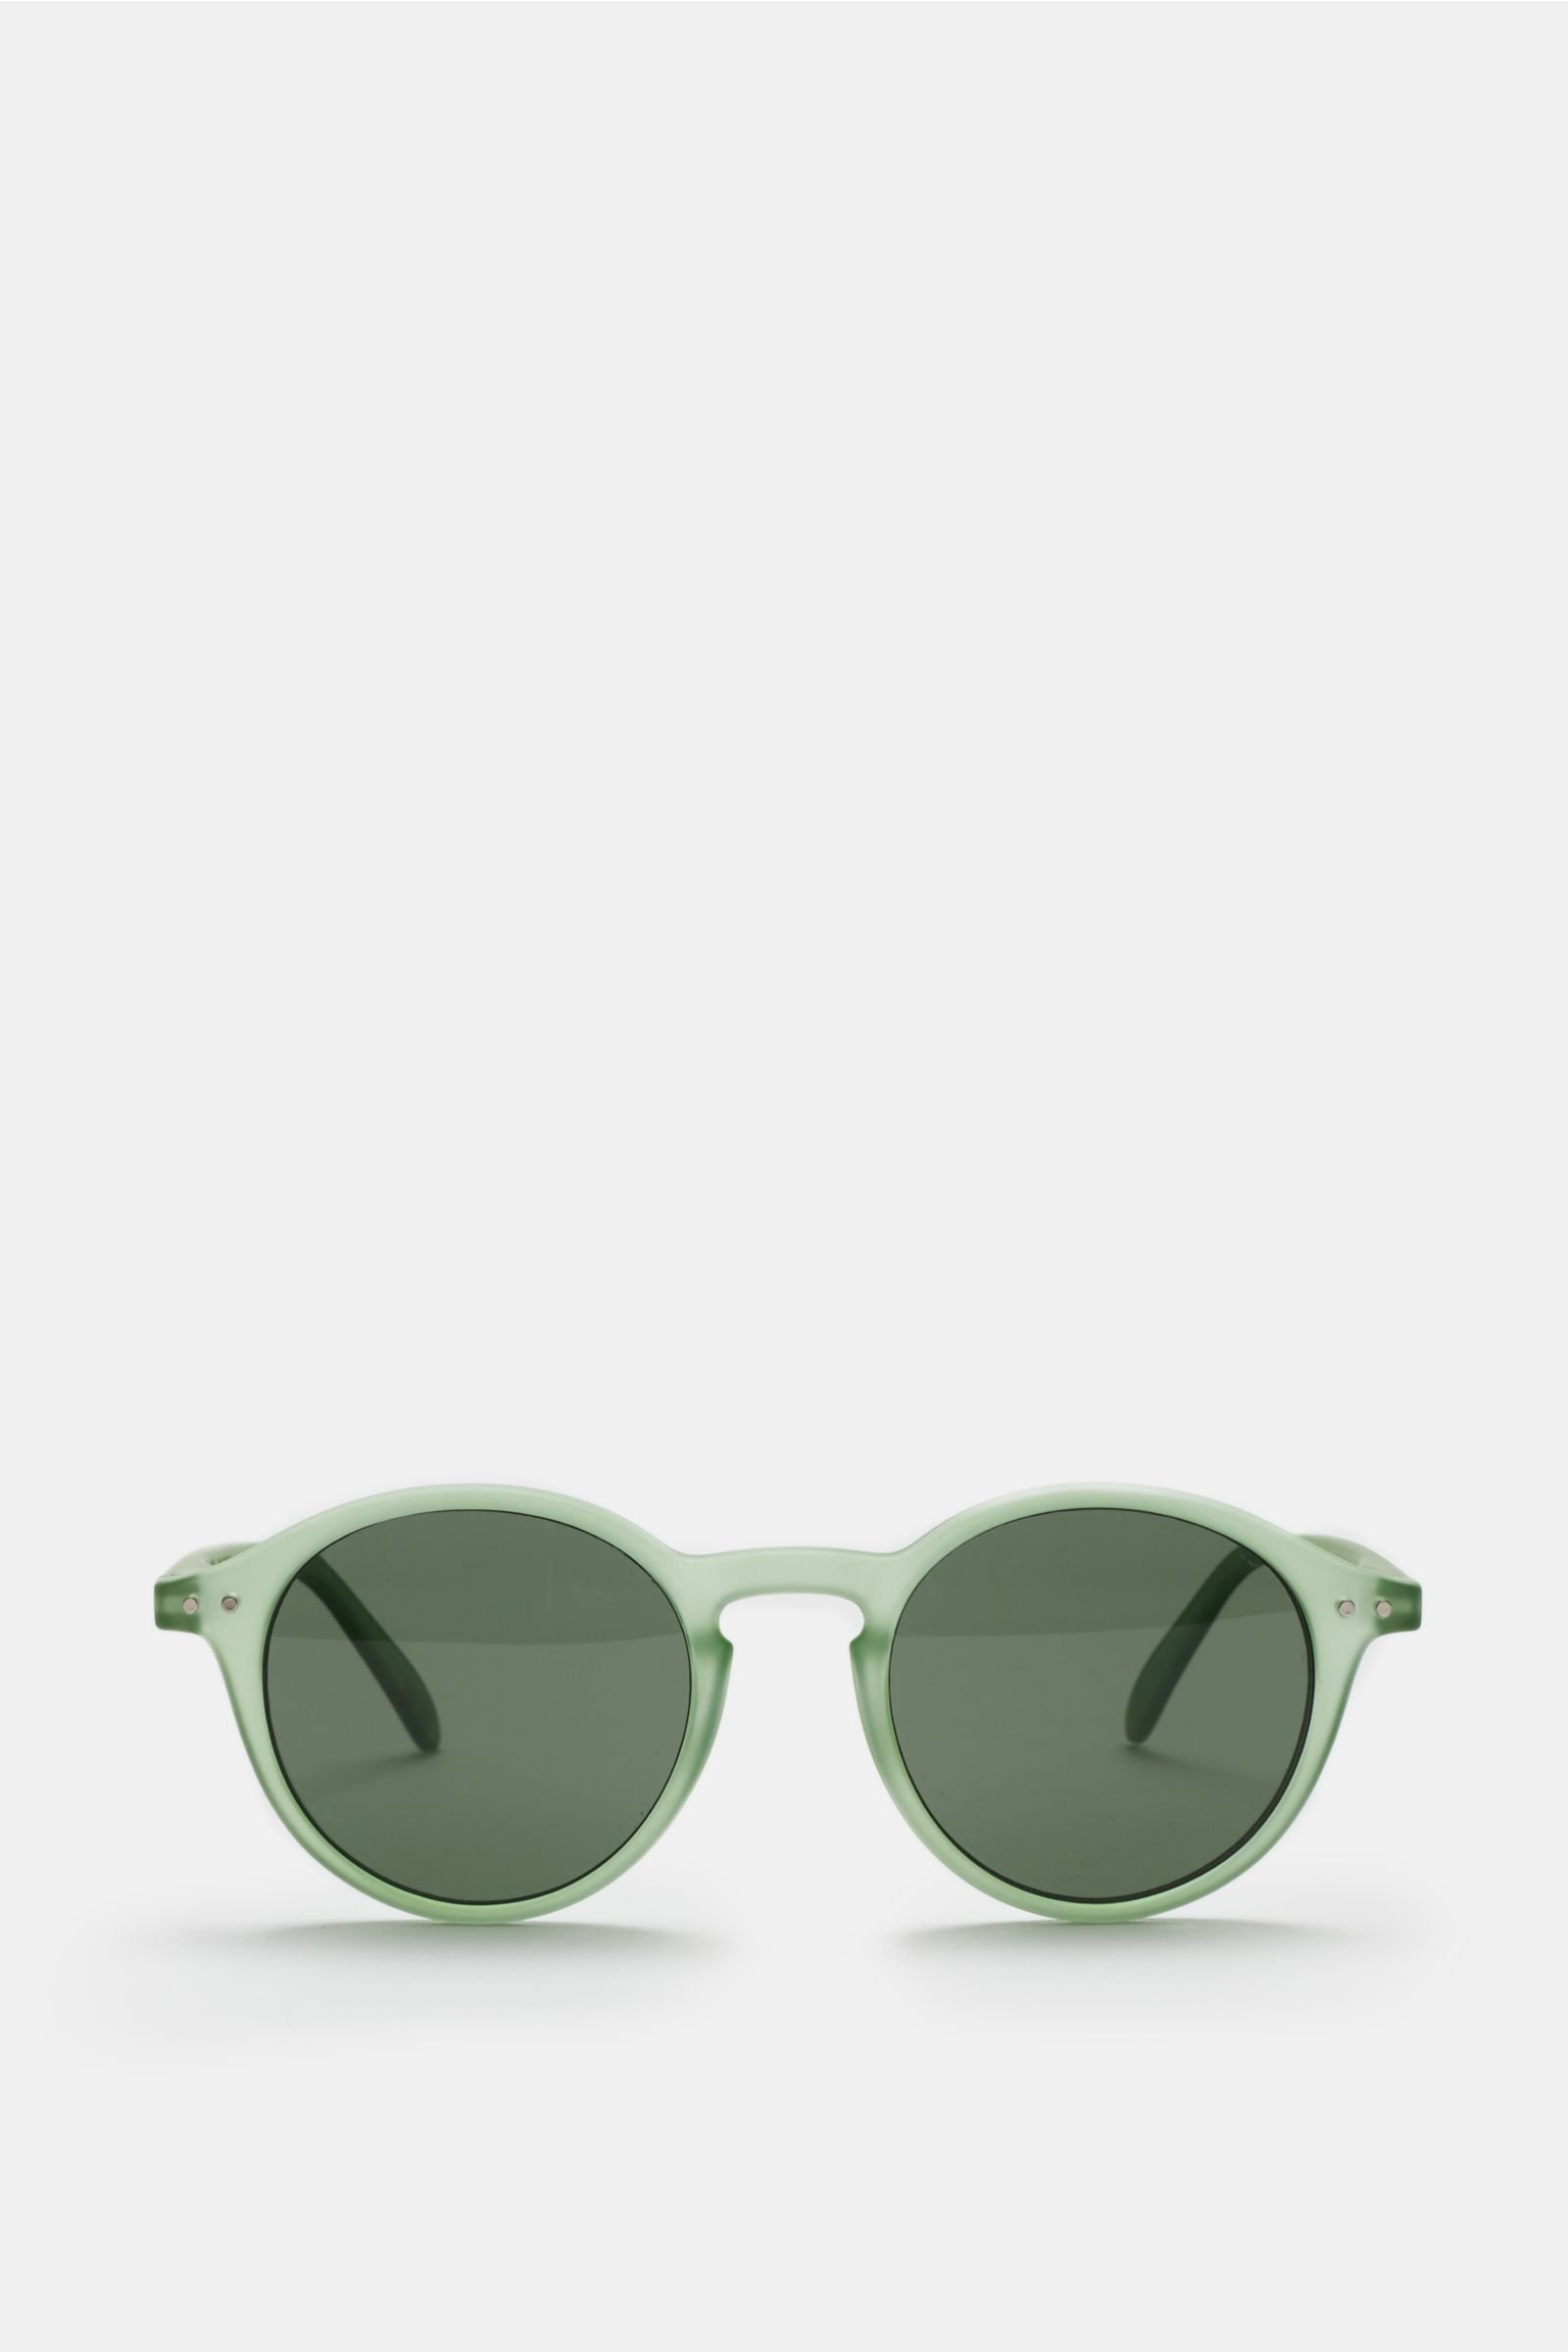 Sunglasses '#D Bloom' light green/green